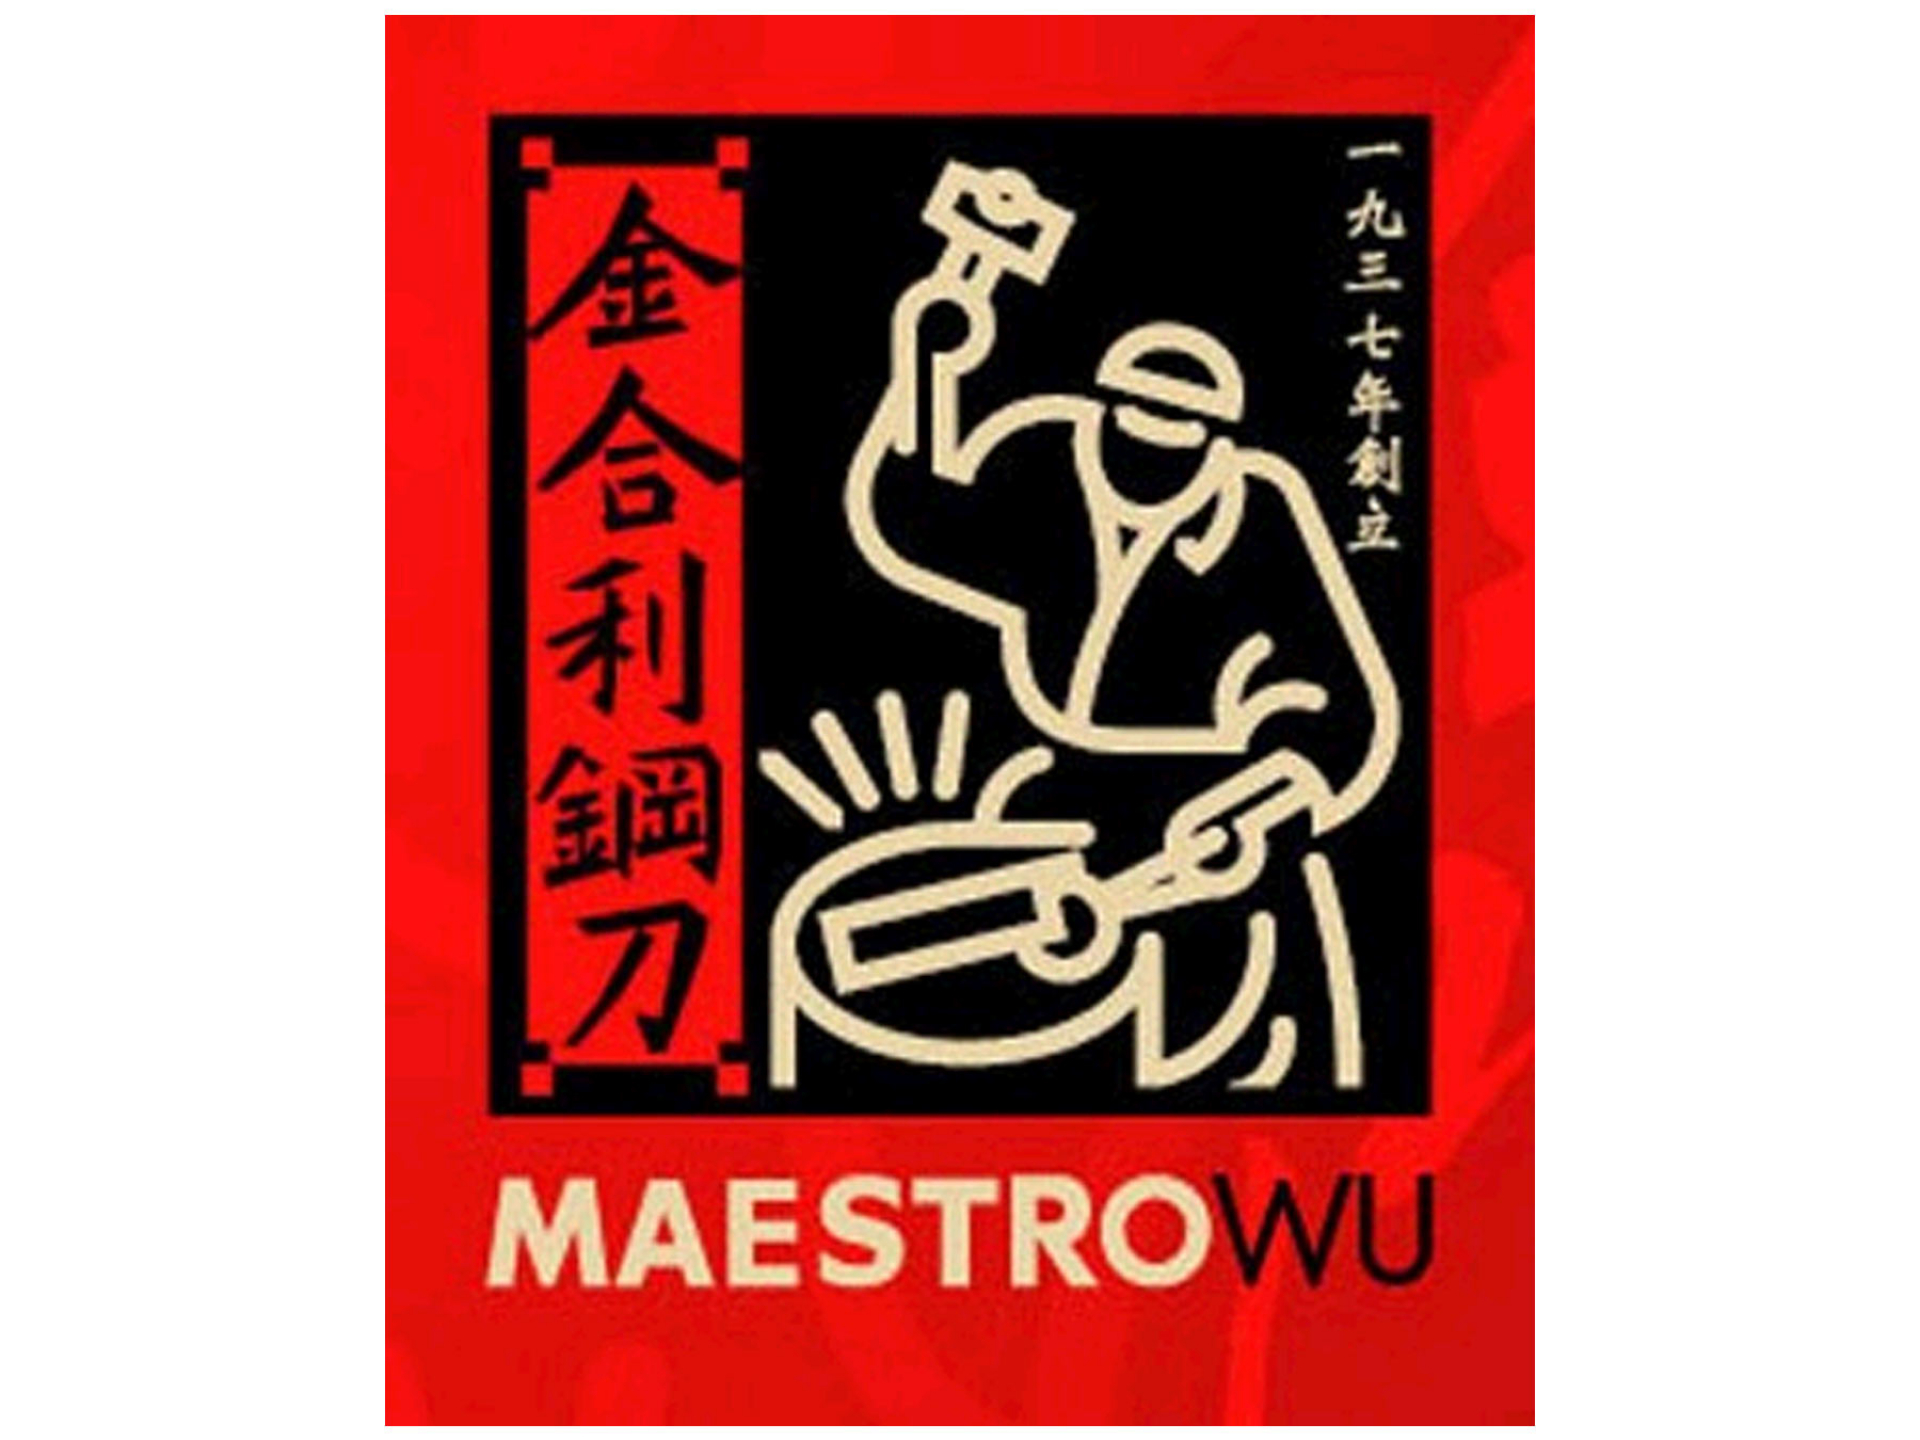 Maestro Wu Damast AMA-09 Chinesisches Kochmesser 17 cm